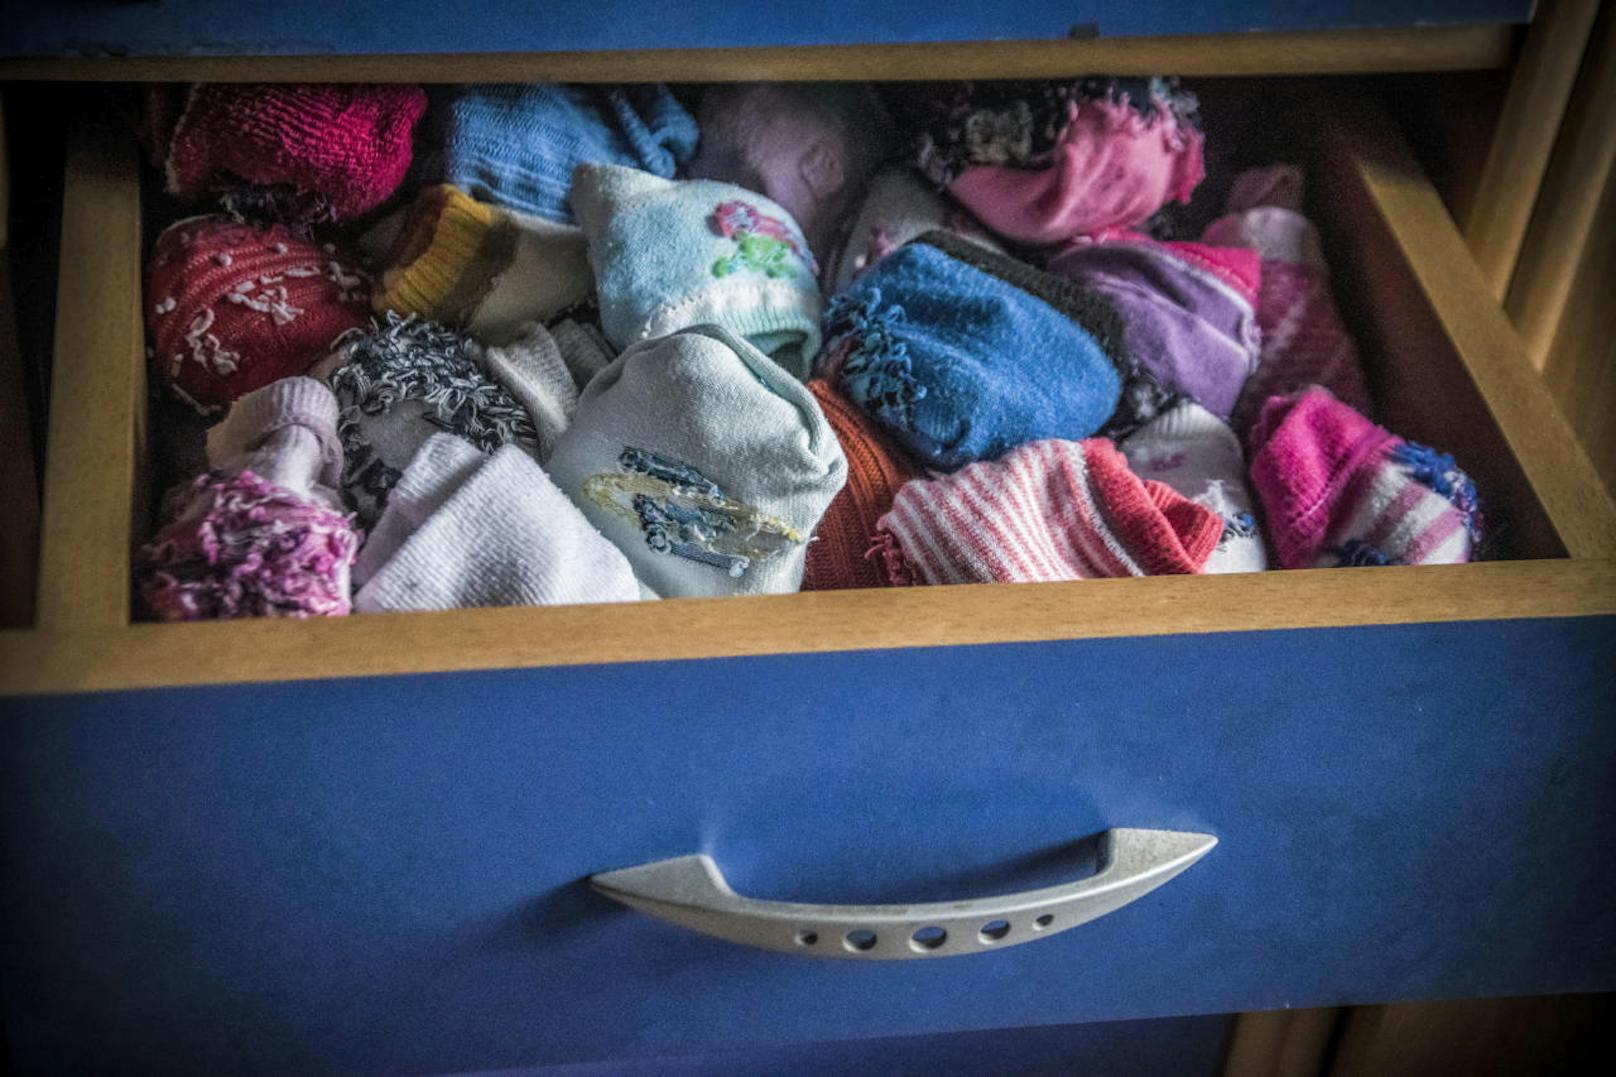 Die verschwundenen Socken aus der Waschmaschine sind ein Mysterium und meistens hoffen wir, dass die zugehörige Socke wieder auftaucht. Das tut sie aber meistens nicht. Also: Weg mit den einsamen Socken.